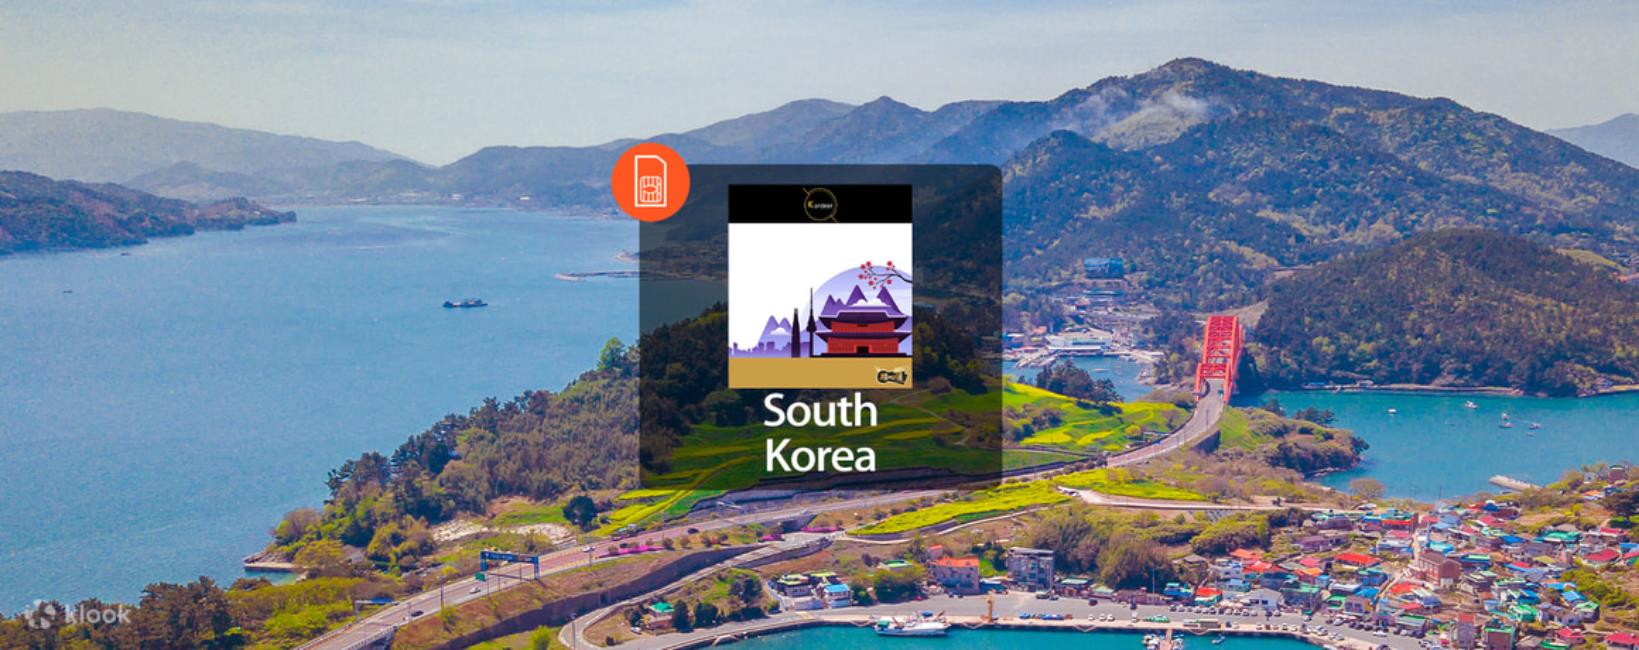 韓國4G吃到飽上網SIM卡,韓國4G行動WiFi分享器,klook,韓國上網